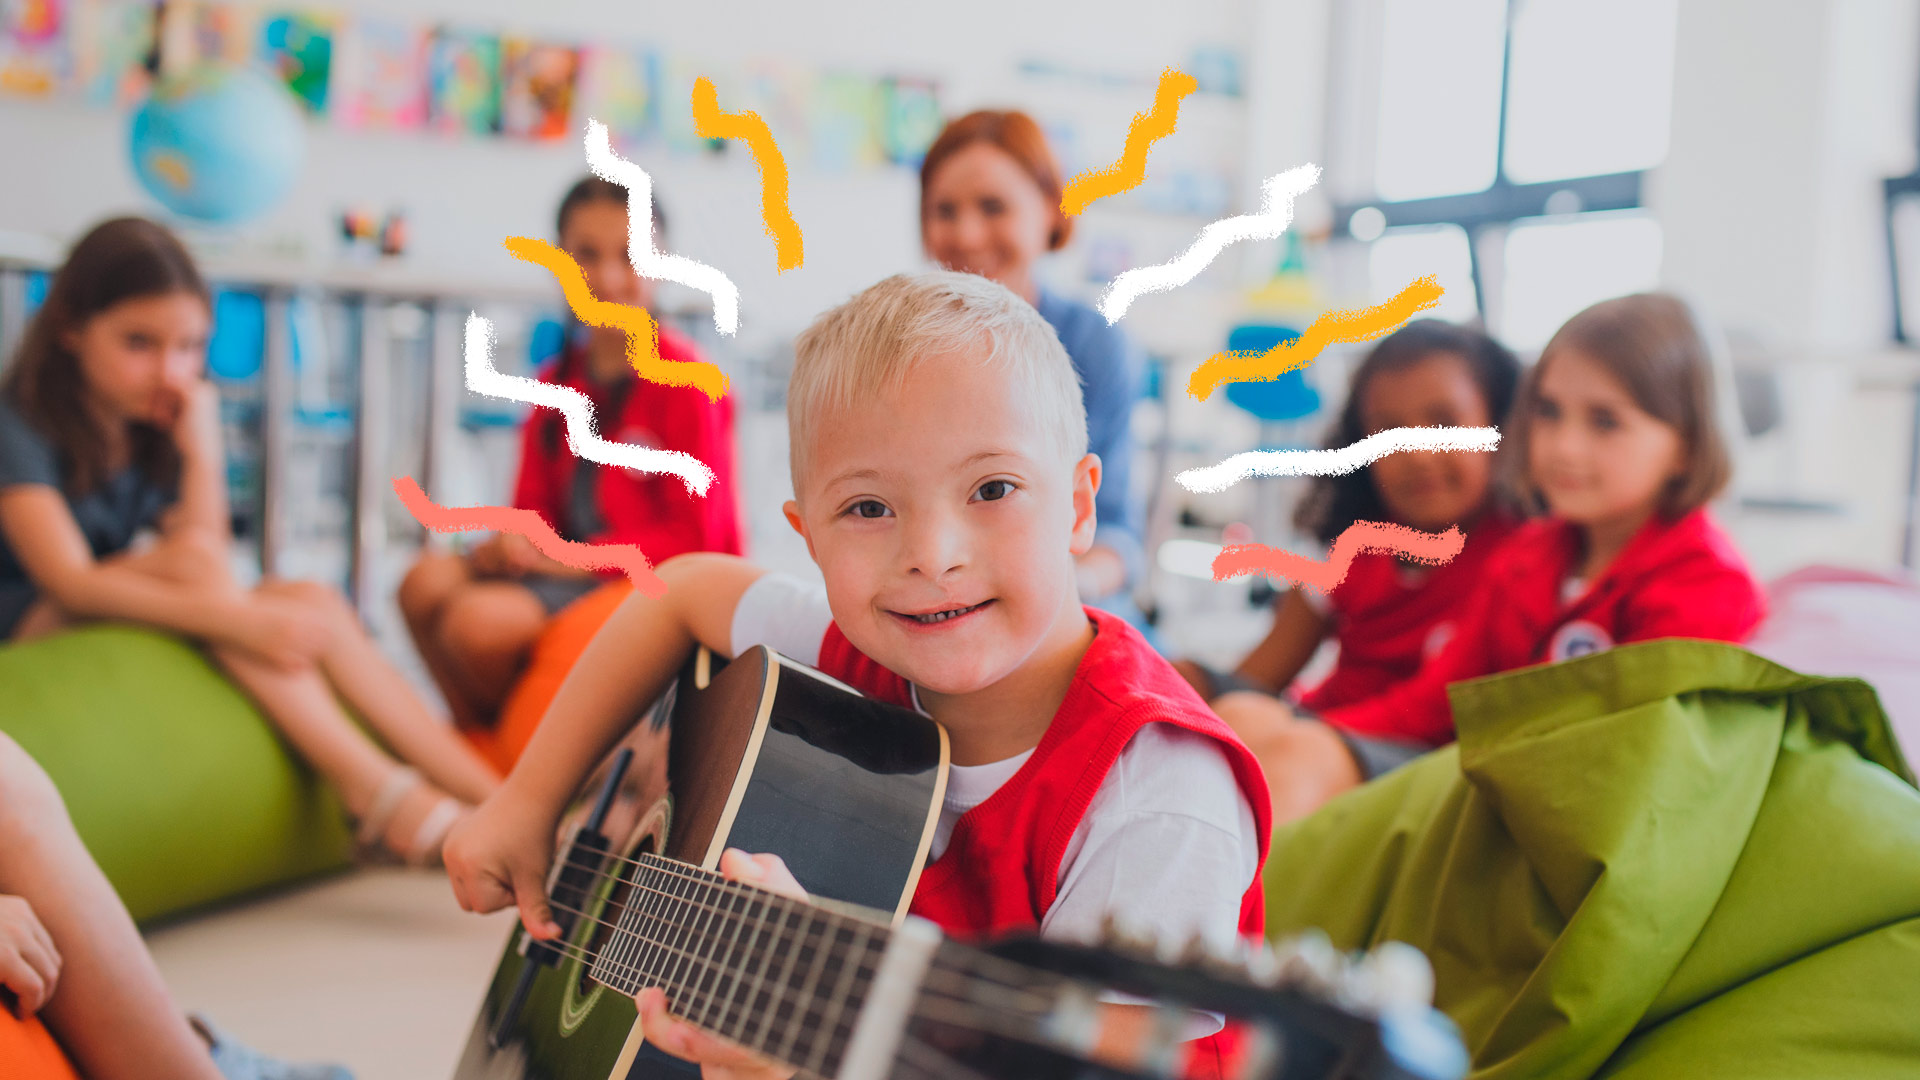 Educação inclusiva: um garoto que tem síndrome de Down aparece em destaque segurando um violão. Ao fundo, em círculo, estão seus colegas e a professora da turma